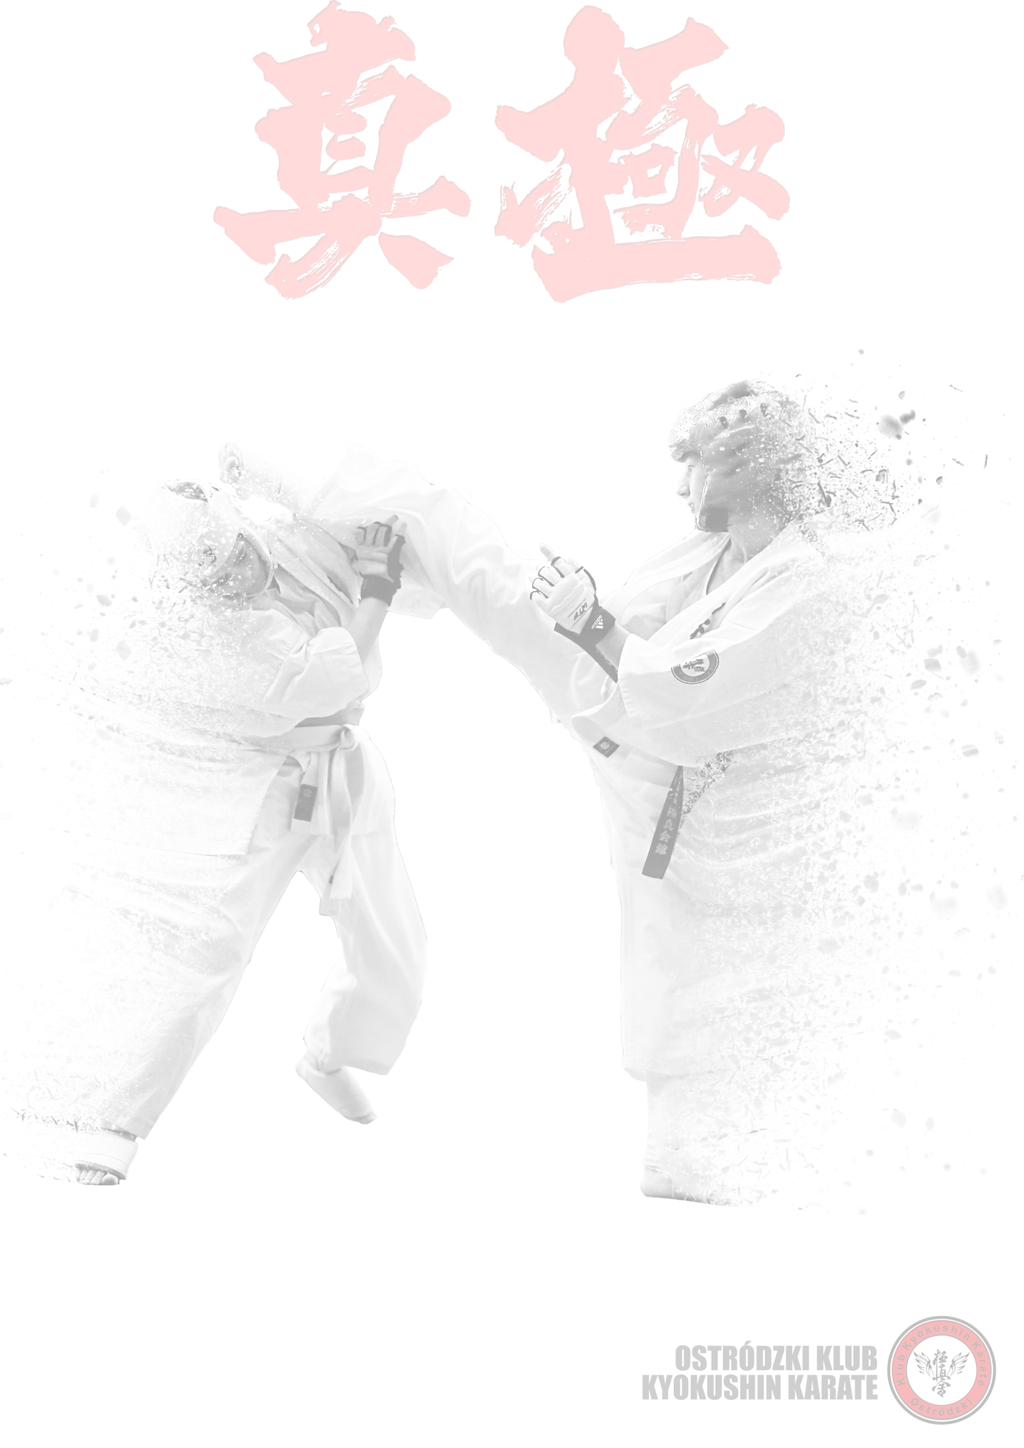 PROGRAM MINUTOWY I Międzynarodowego Turnieju Karate Kyokushin "IKO MAZURY CUP- OSTRÓDA 2017" *Piątek, 03 listopad 2017 18.00-20.00 weryfikacja zawodników (mała sala gimnastyczna OCSiR ul.